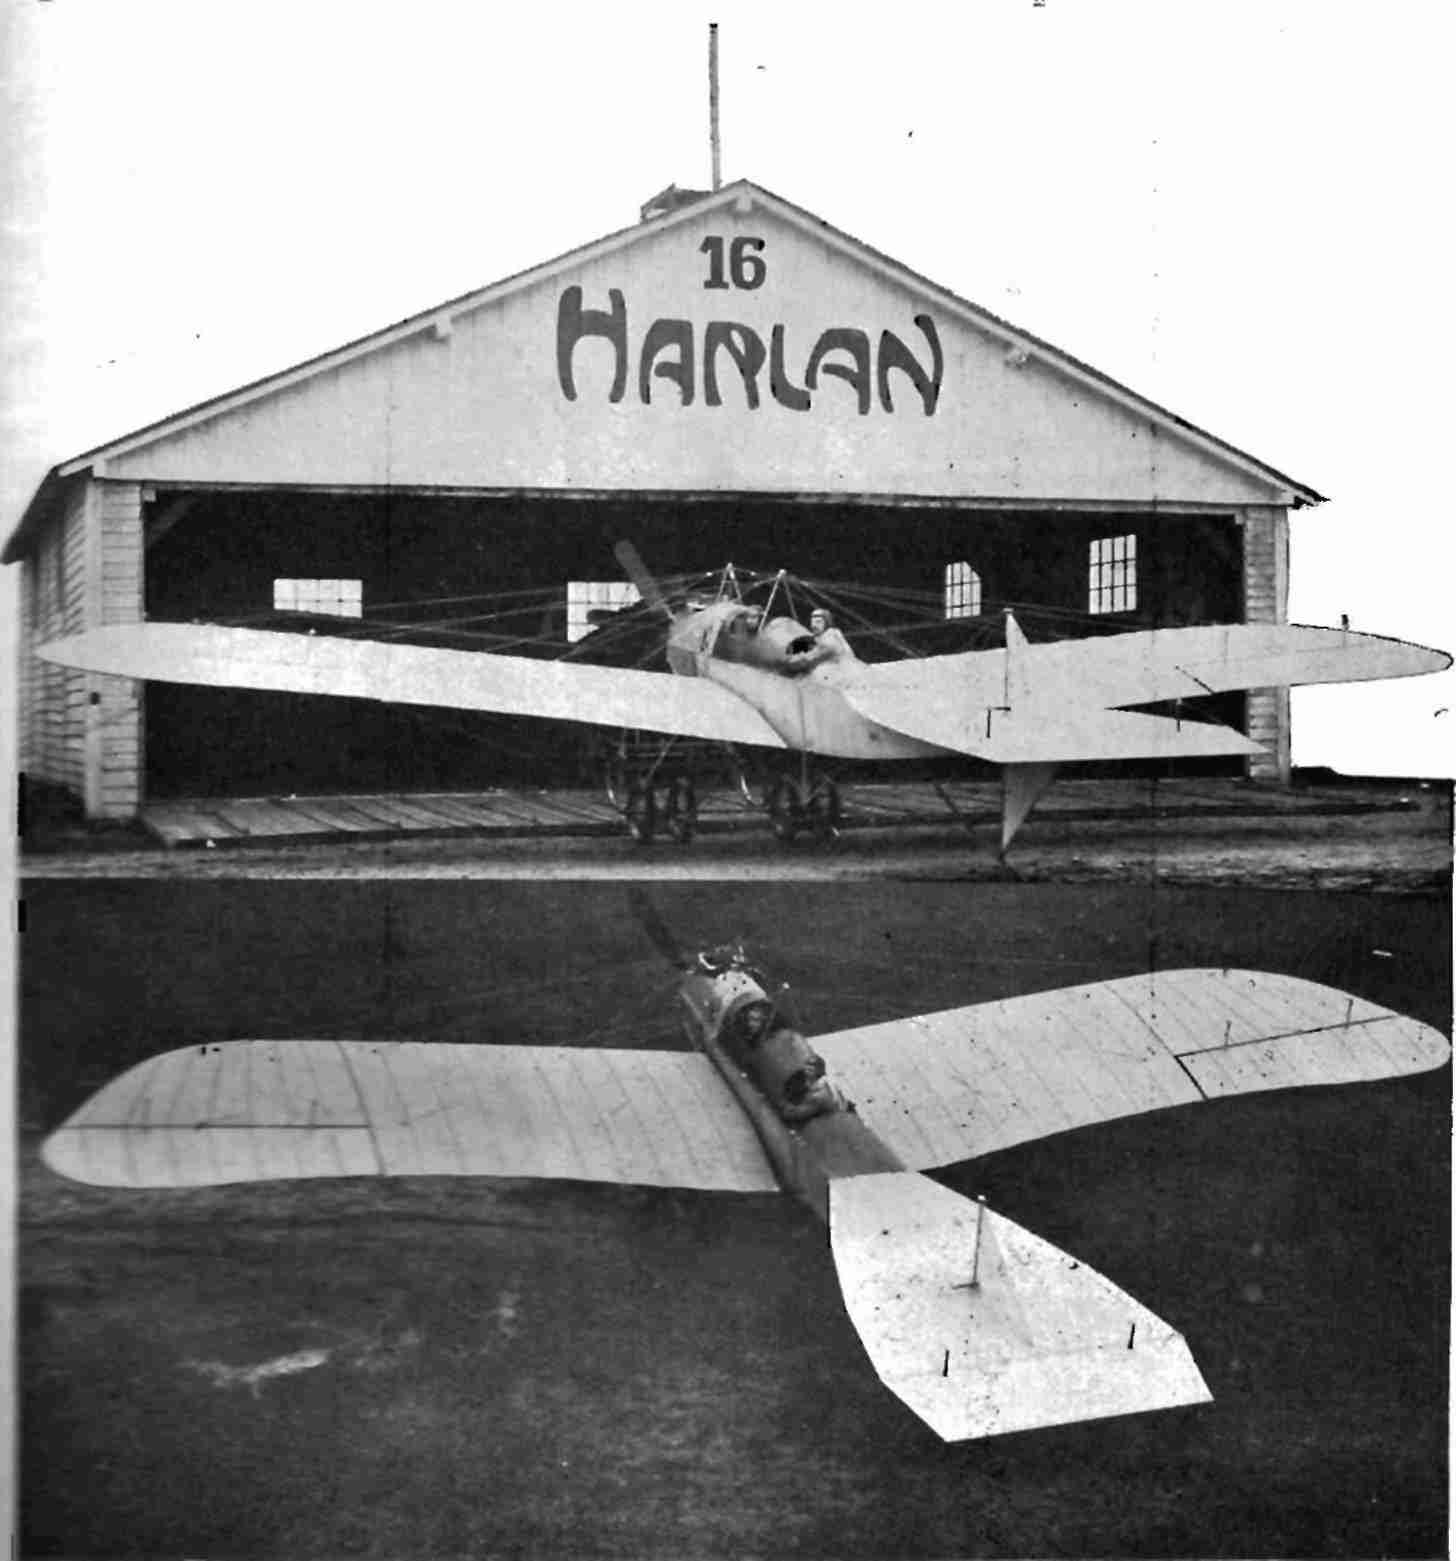 luftfahrt-geschichte-1913-6.jpg